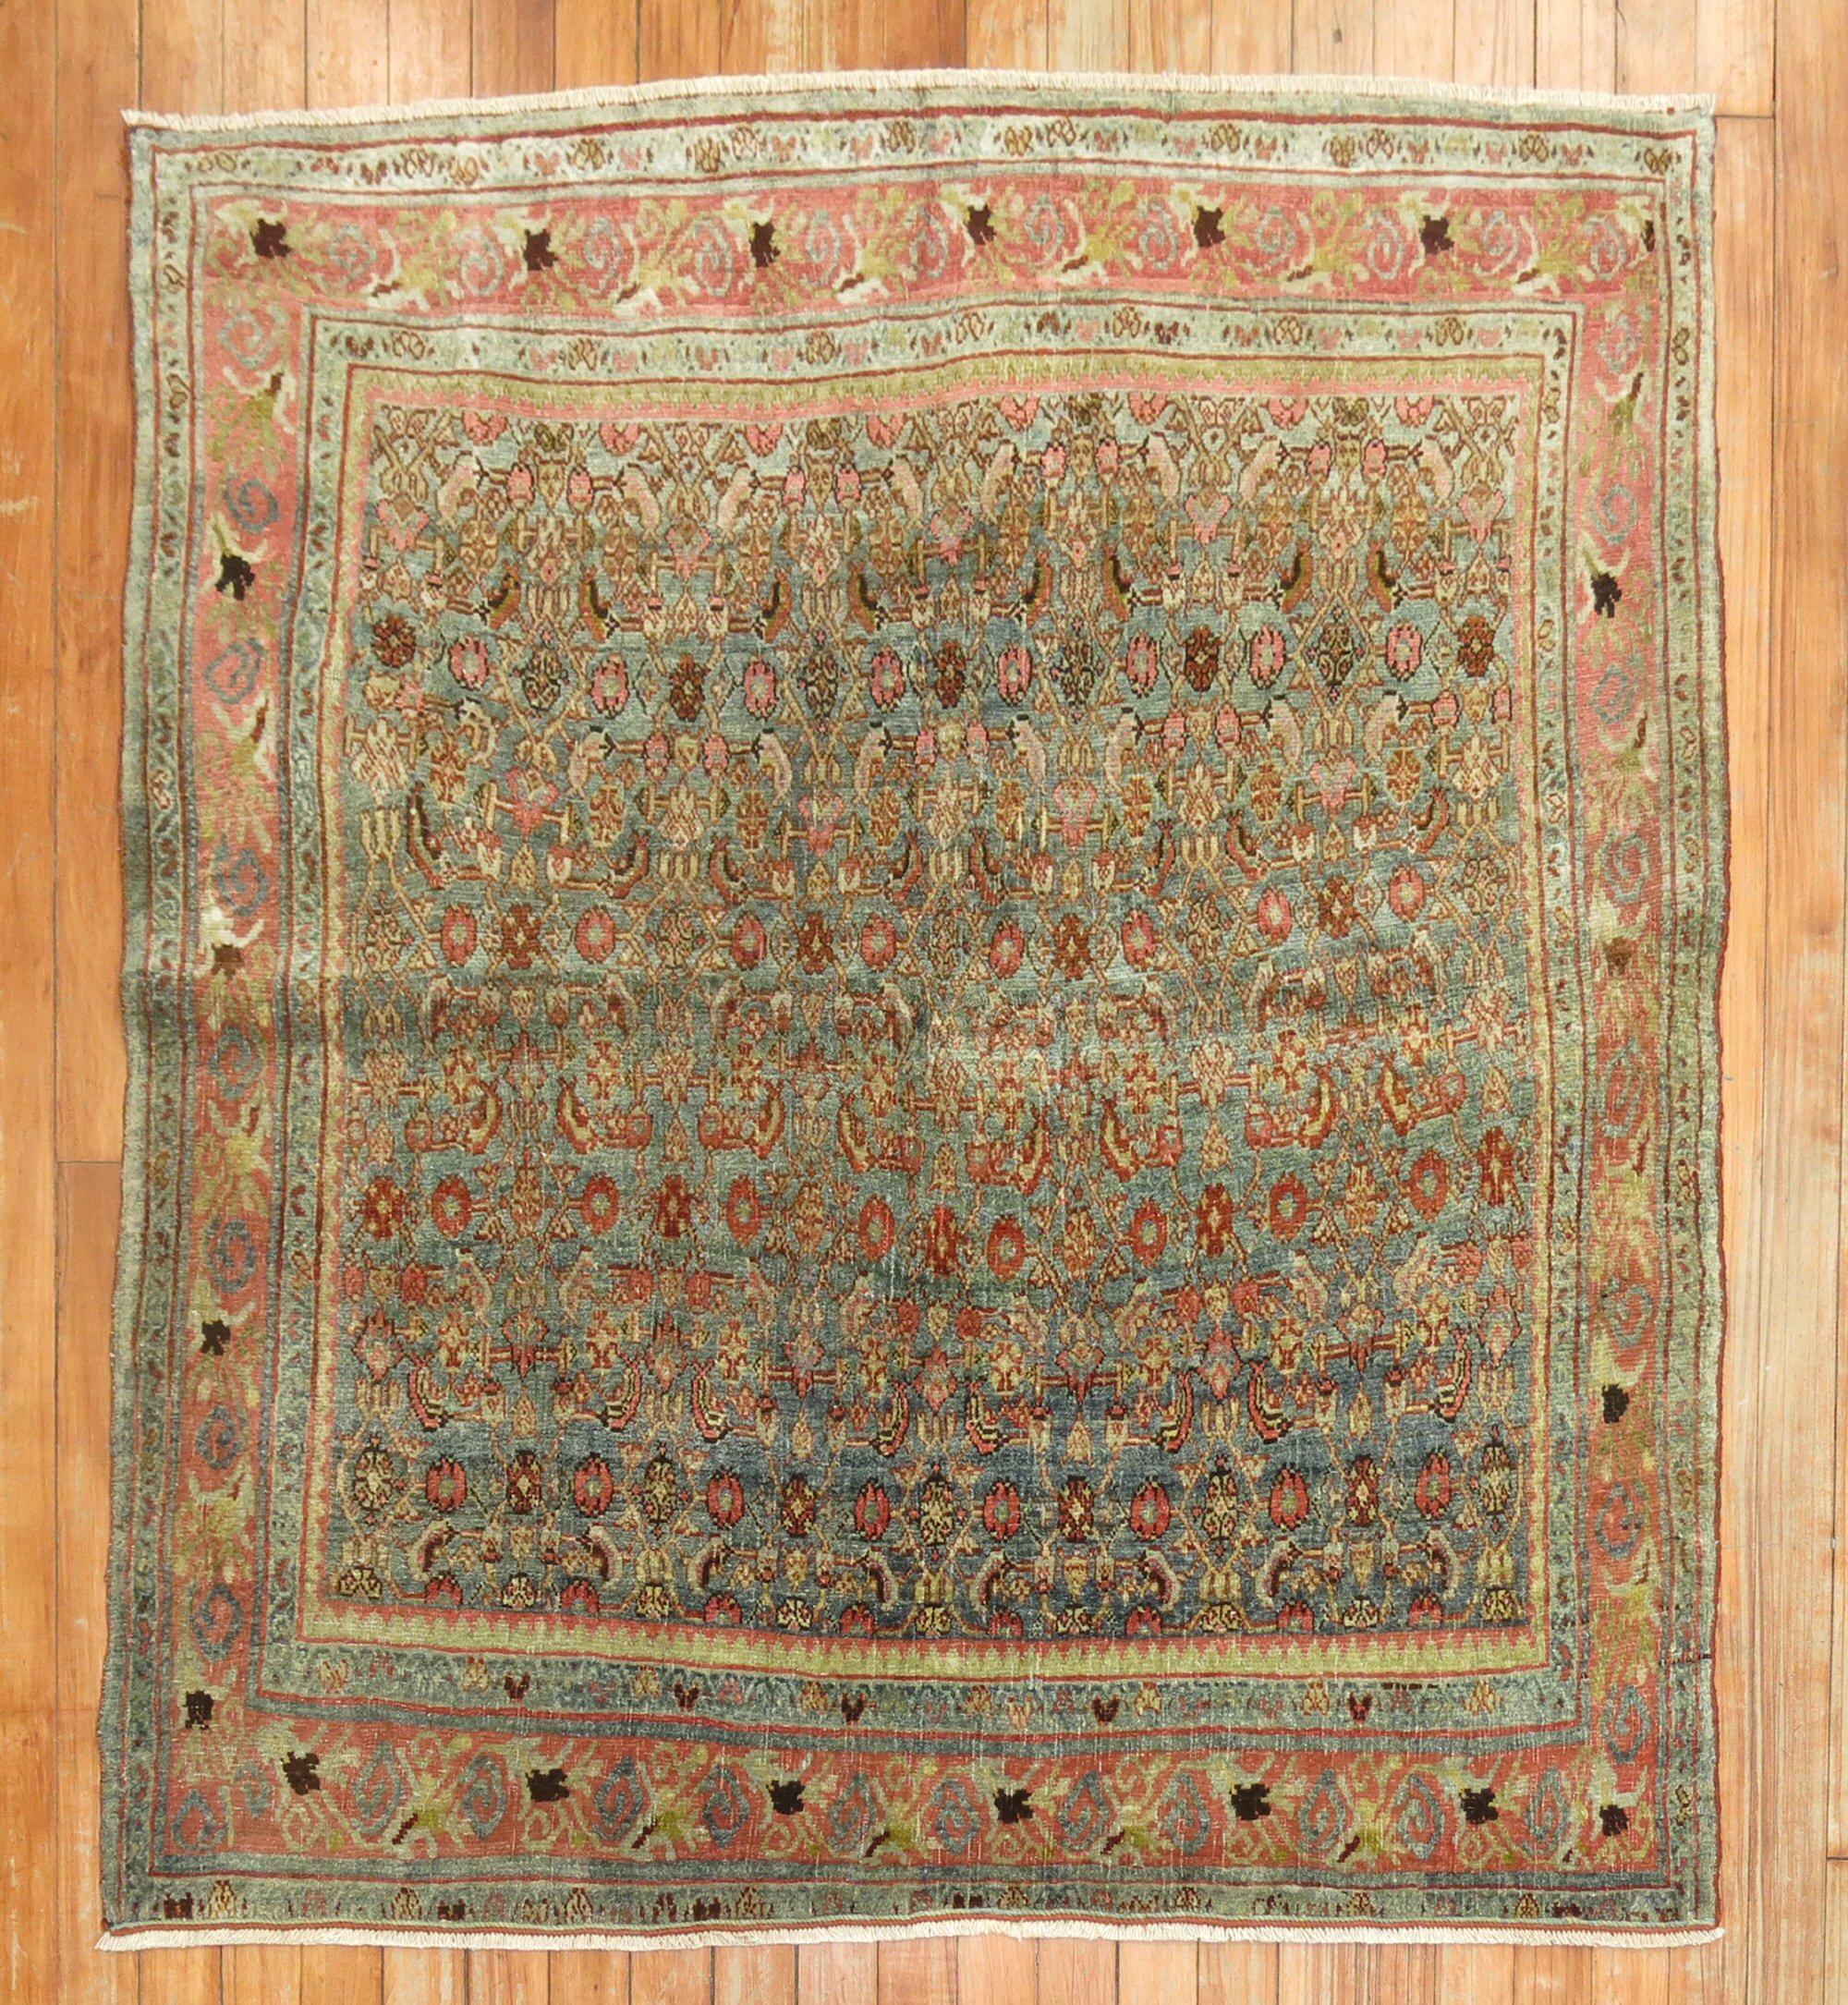 Persischer Bidjar-Teppich aus dem frühen 20. Jahrhundert.

Maße: 45'' x 48''

